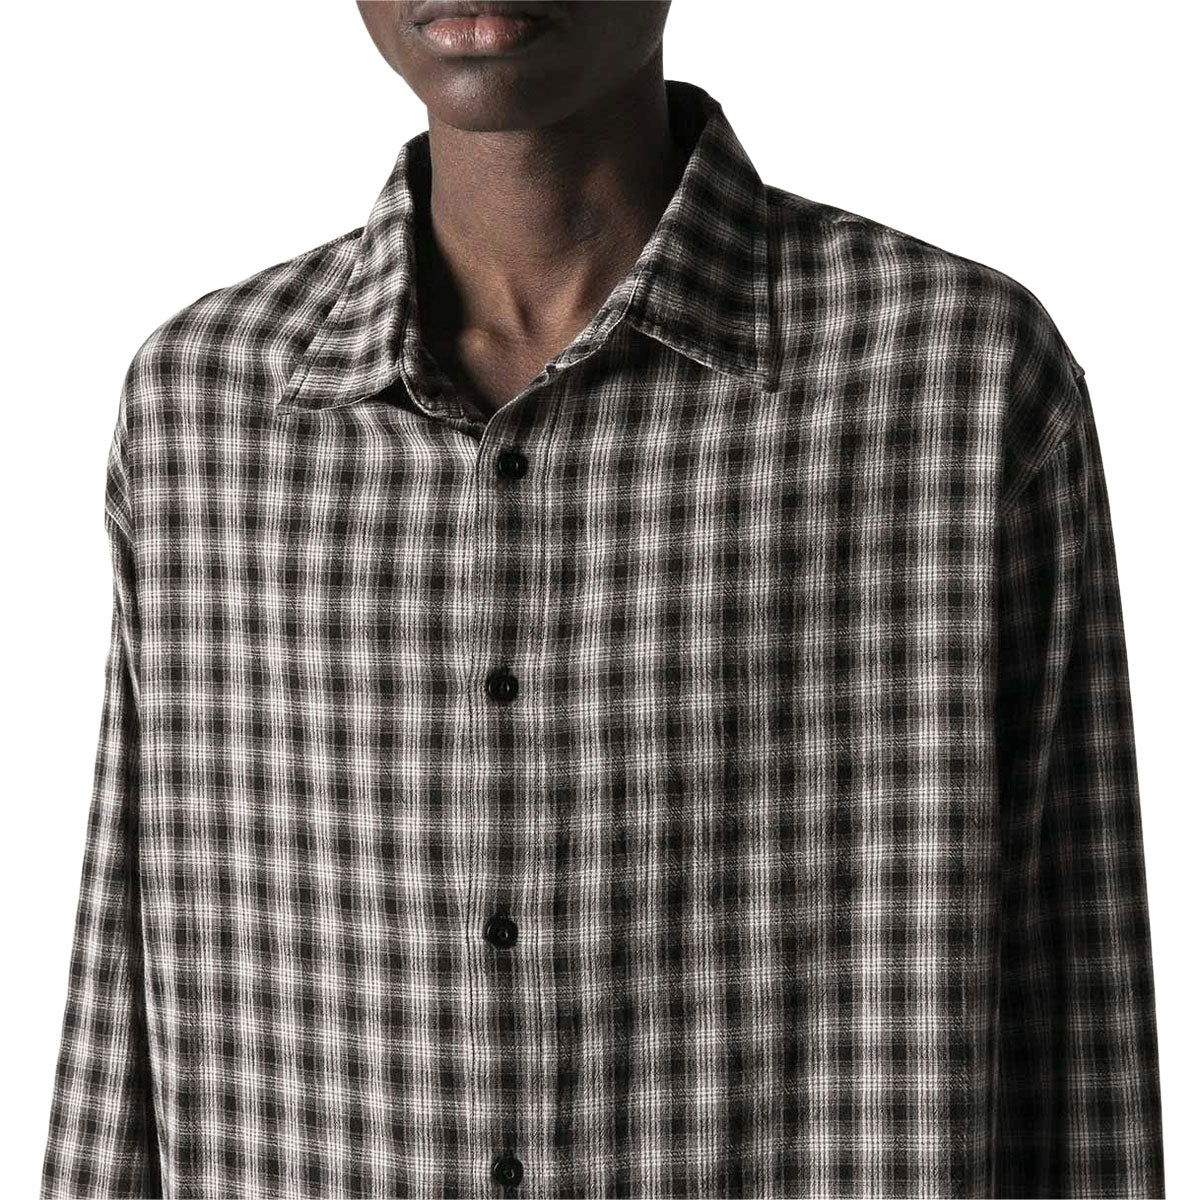 Former Vivian Check Long Sleeve Shirt - Grey Check image 3